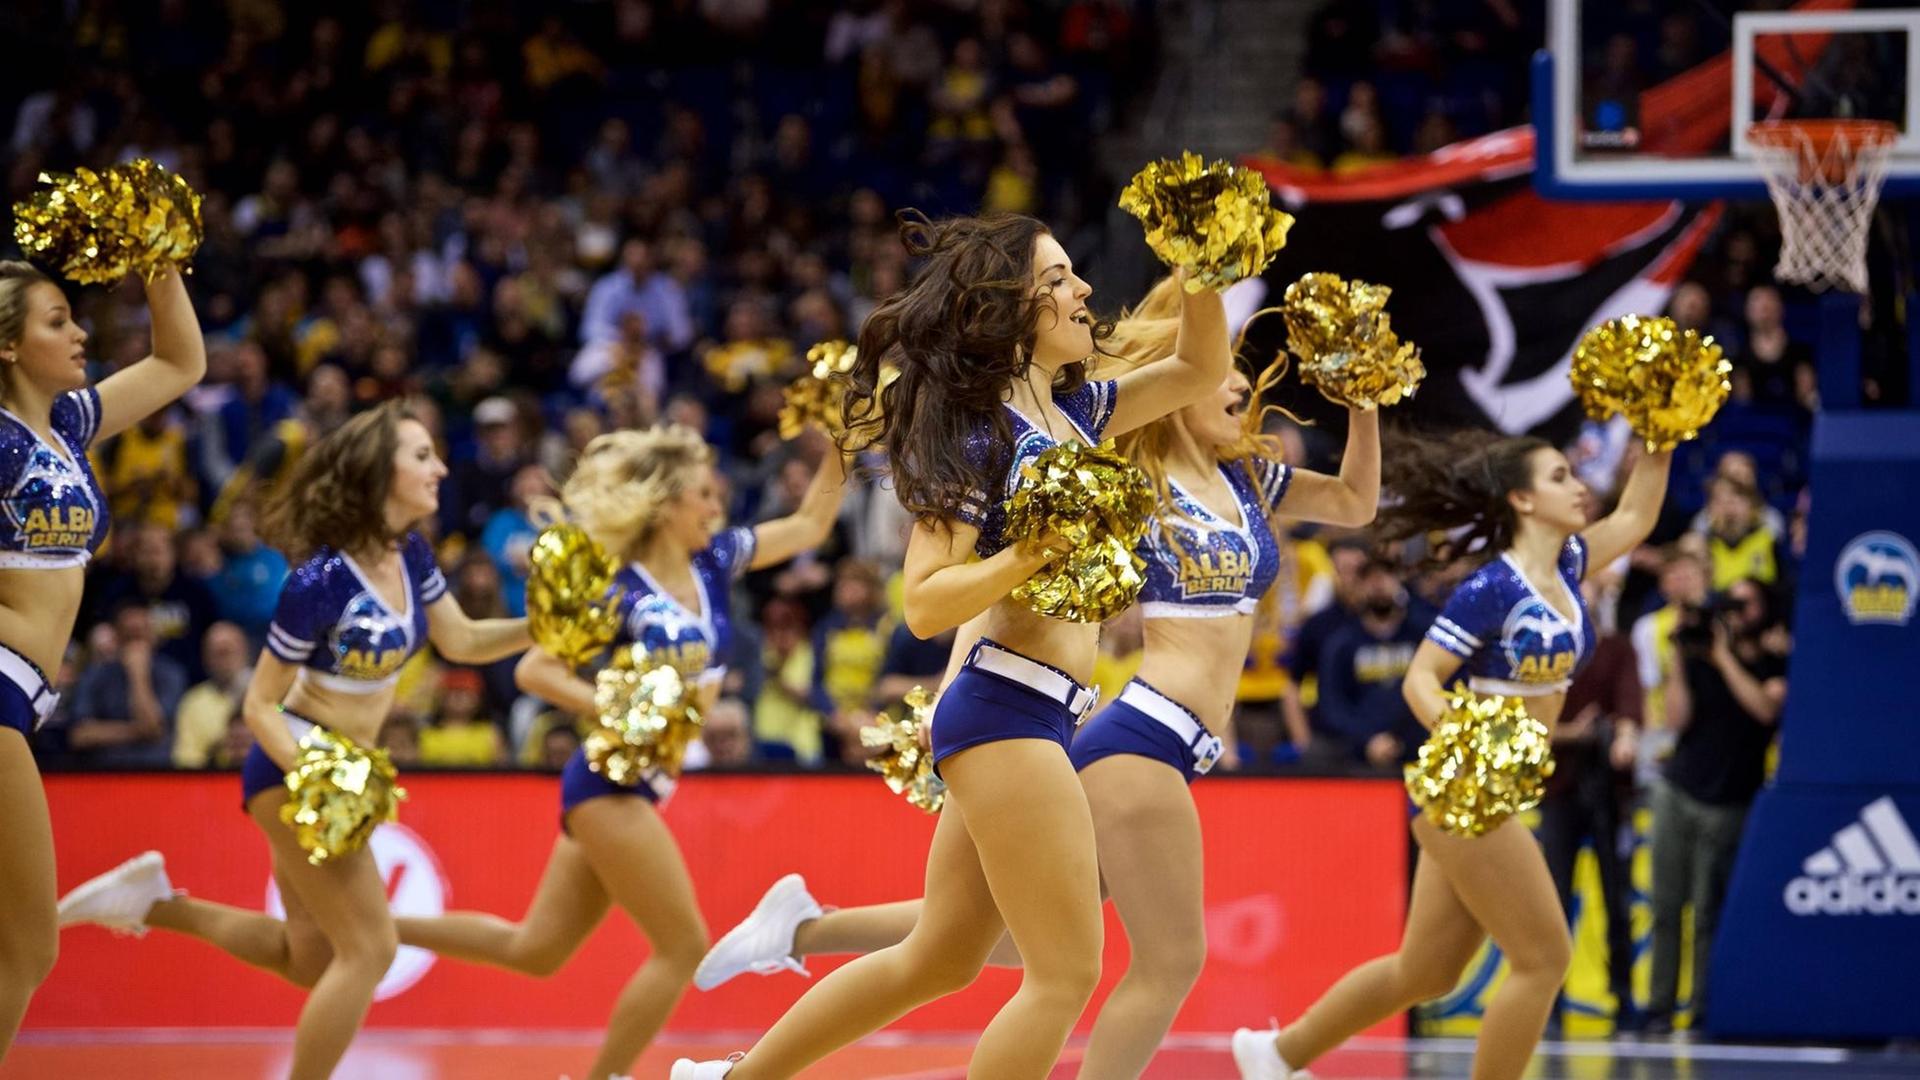 Das Bild zeigt die Cheerleader von dem Basketball-Verein Alba beim Tanzen